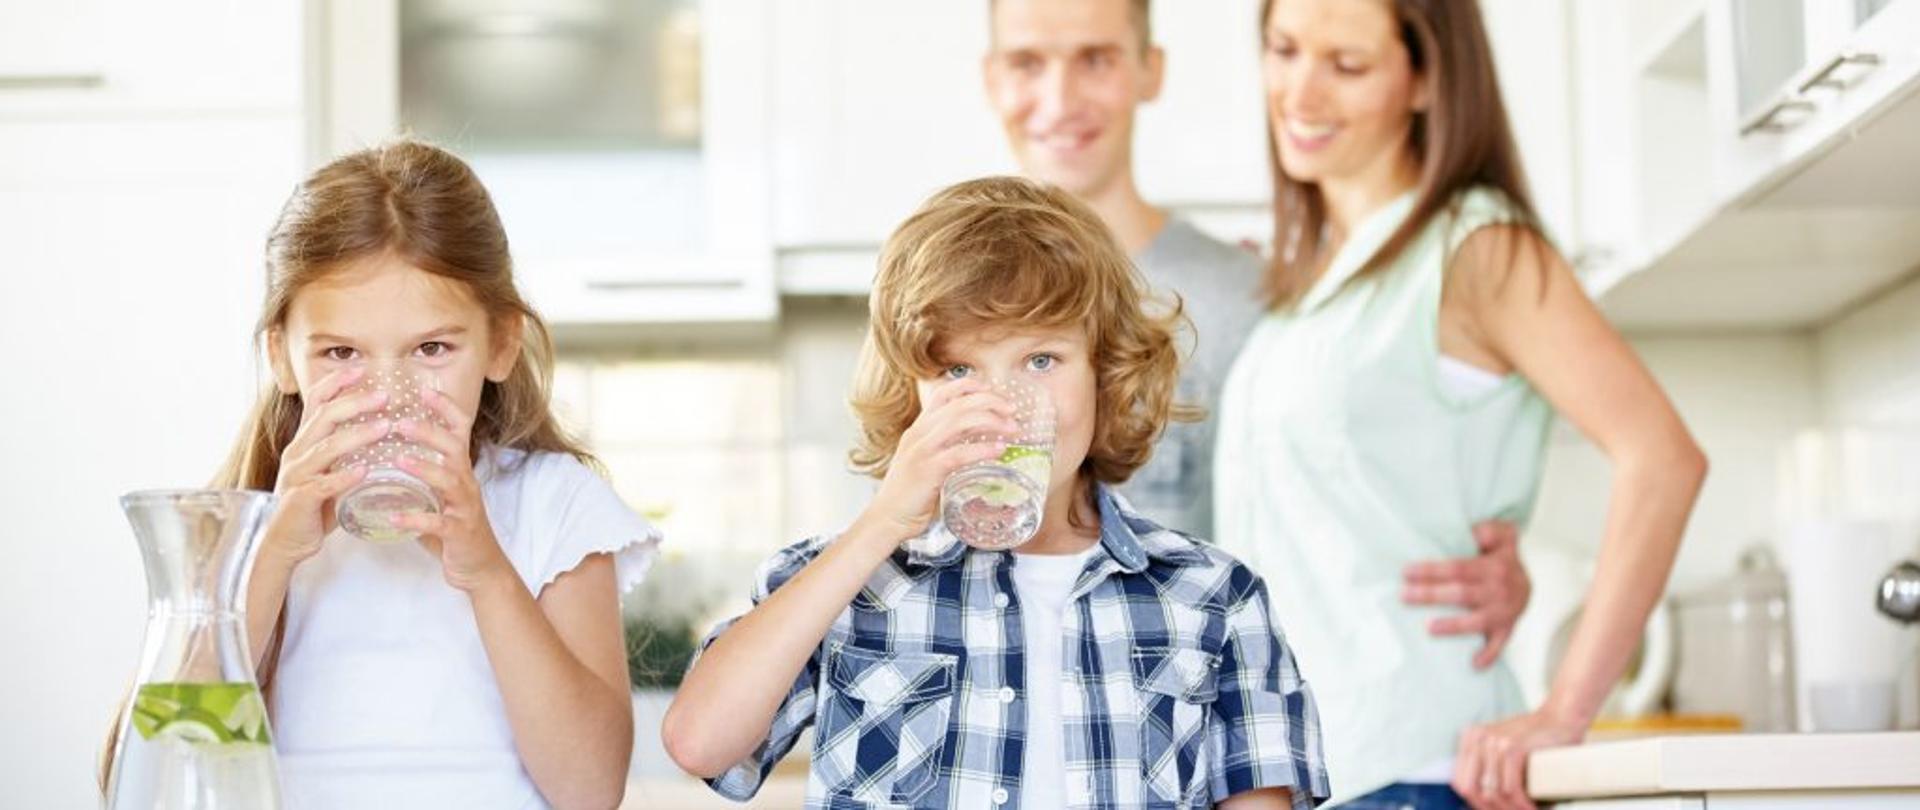 rodzina 4 osoby 2 dzieci pije wodę ze szklanek